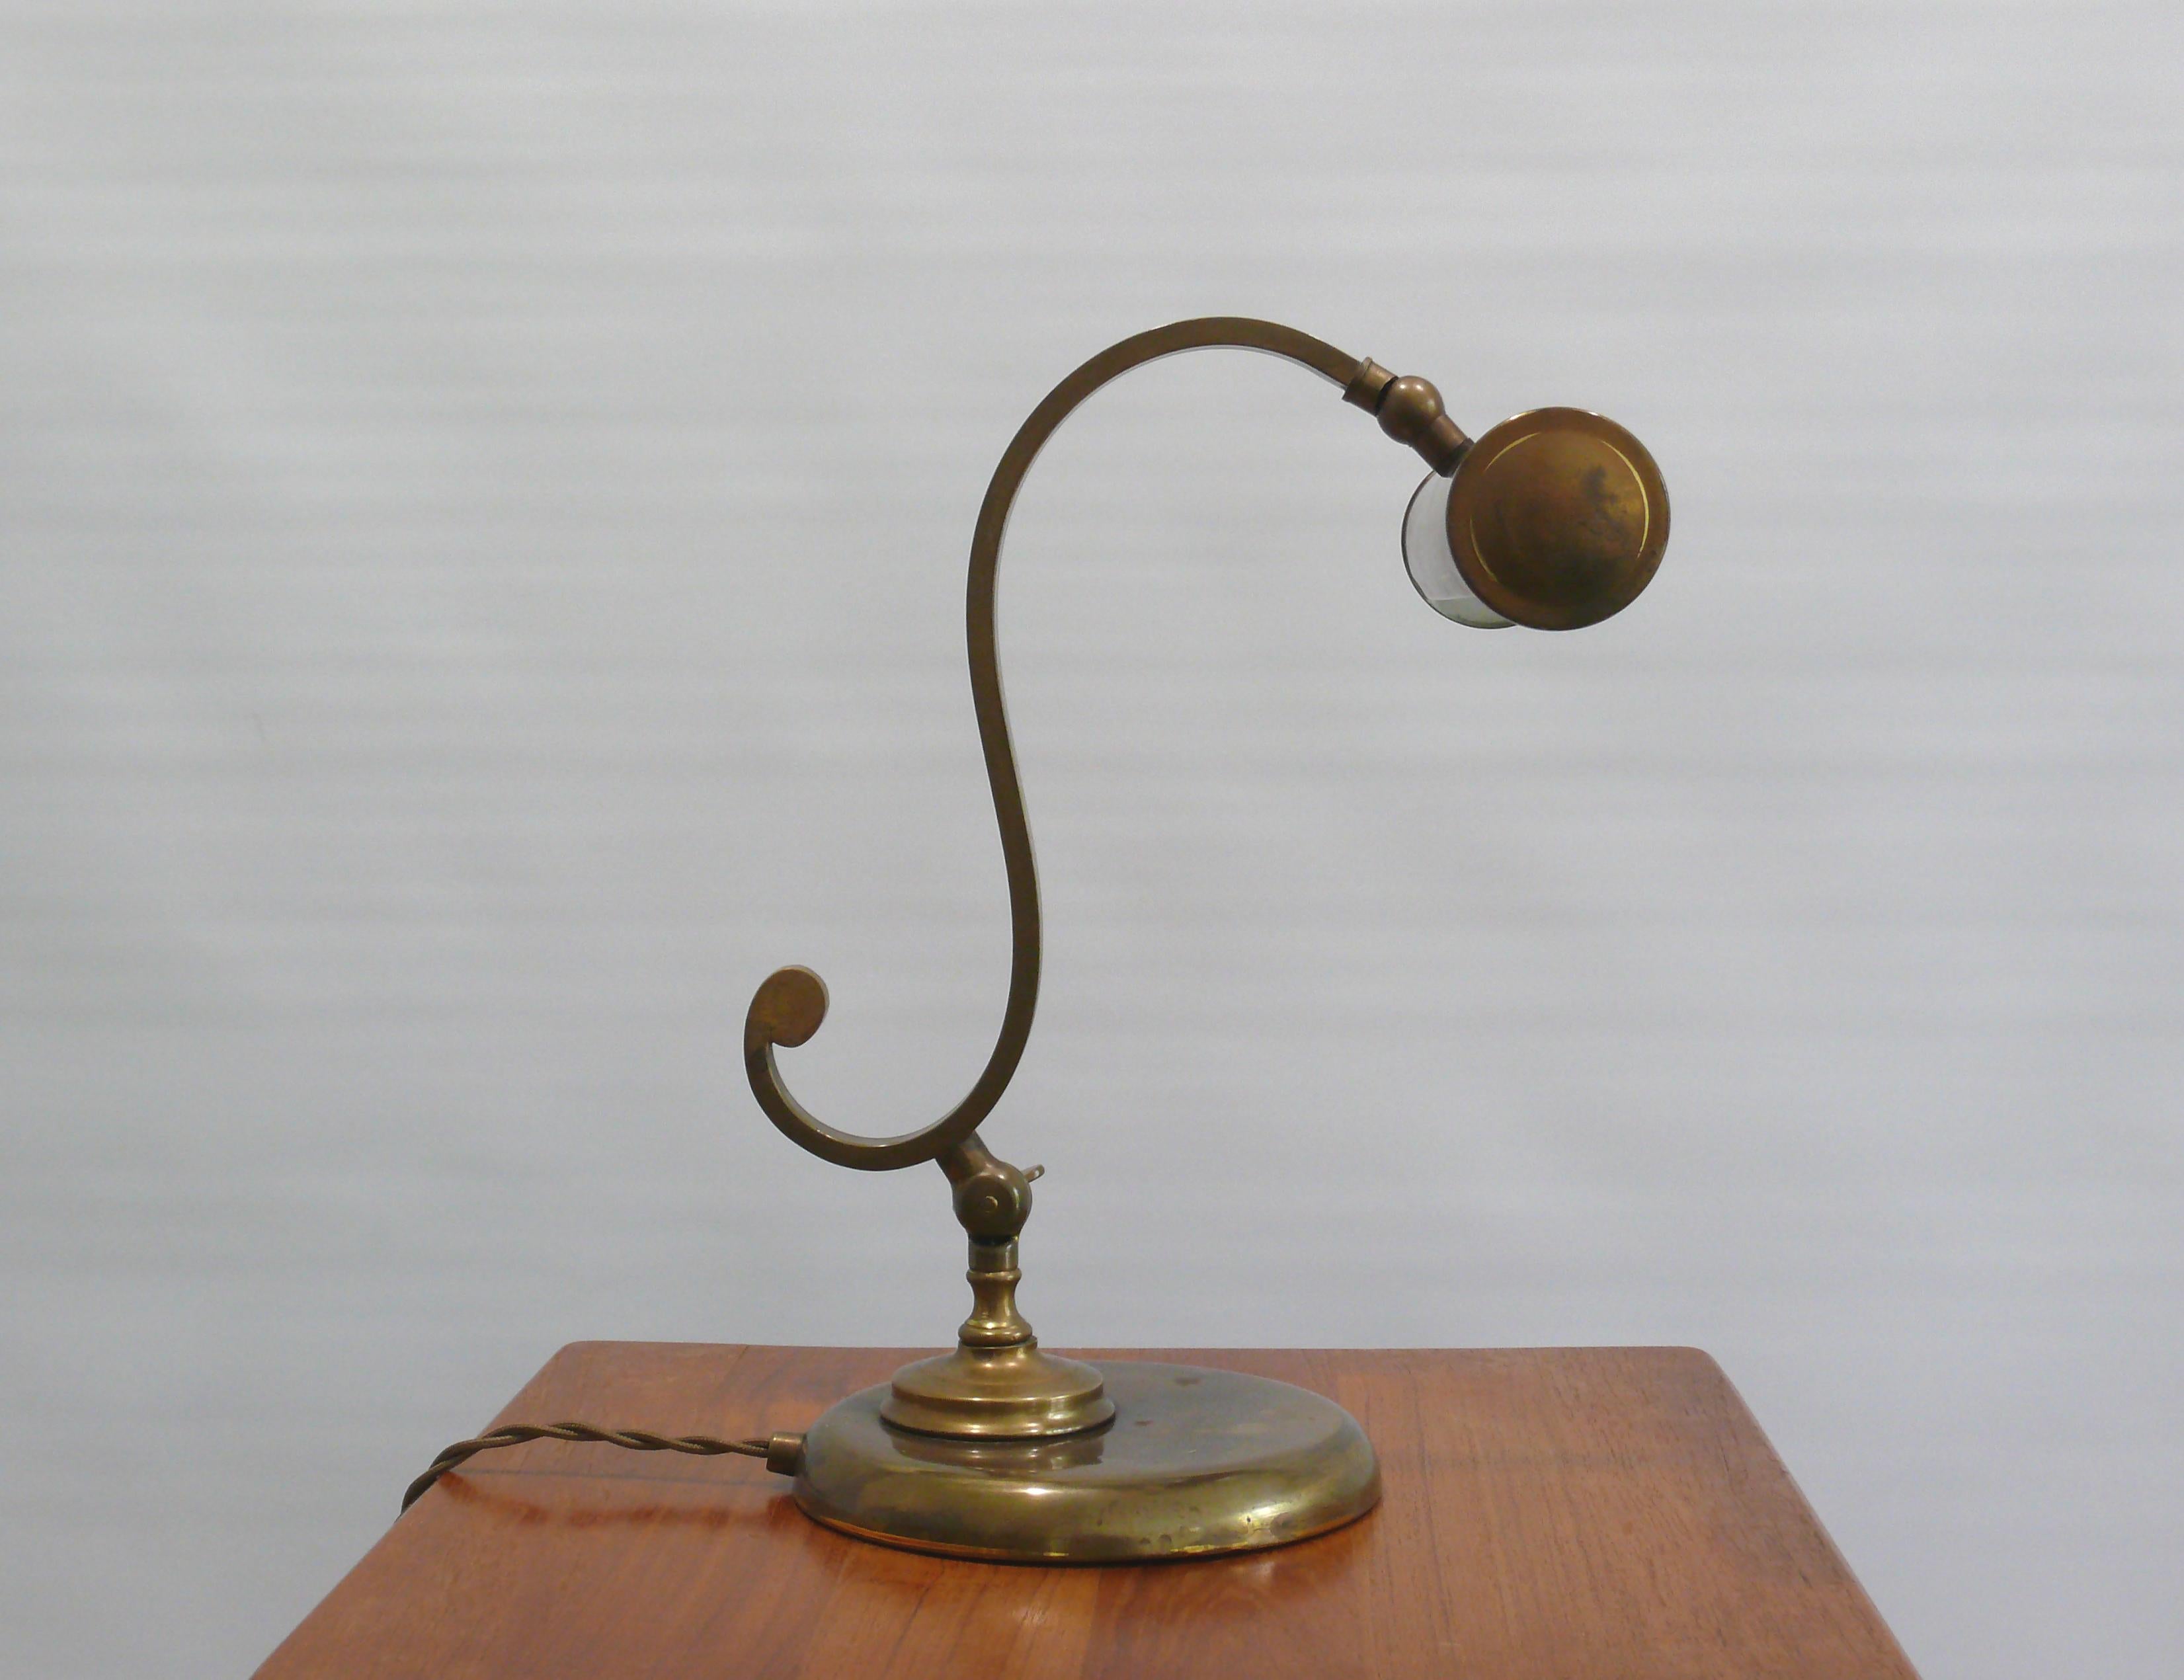 Très solide et lourde lampe de table / lampe de piano en laiton, probablement des années 1950 dans un style Art Nouveau. La lampe est fabriquée en laiton avec une base en métal lourd. Le parapluie et le bras sont réglables. La lumière s'allume et